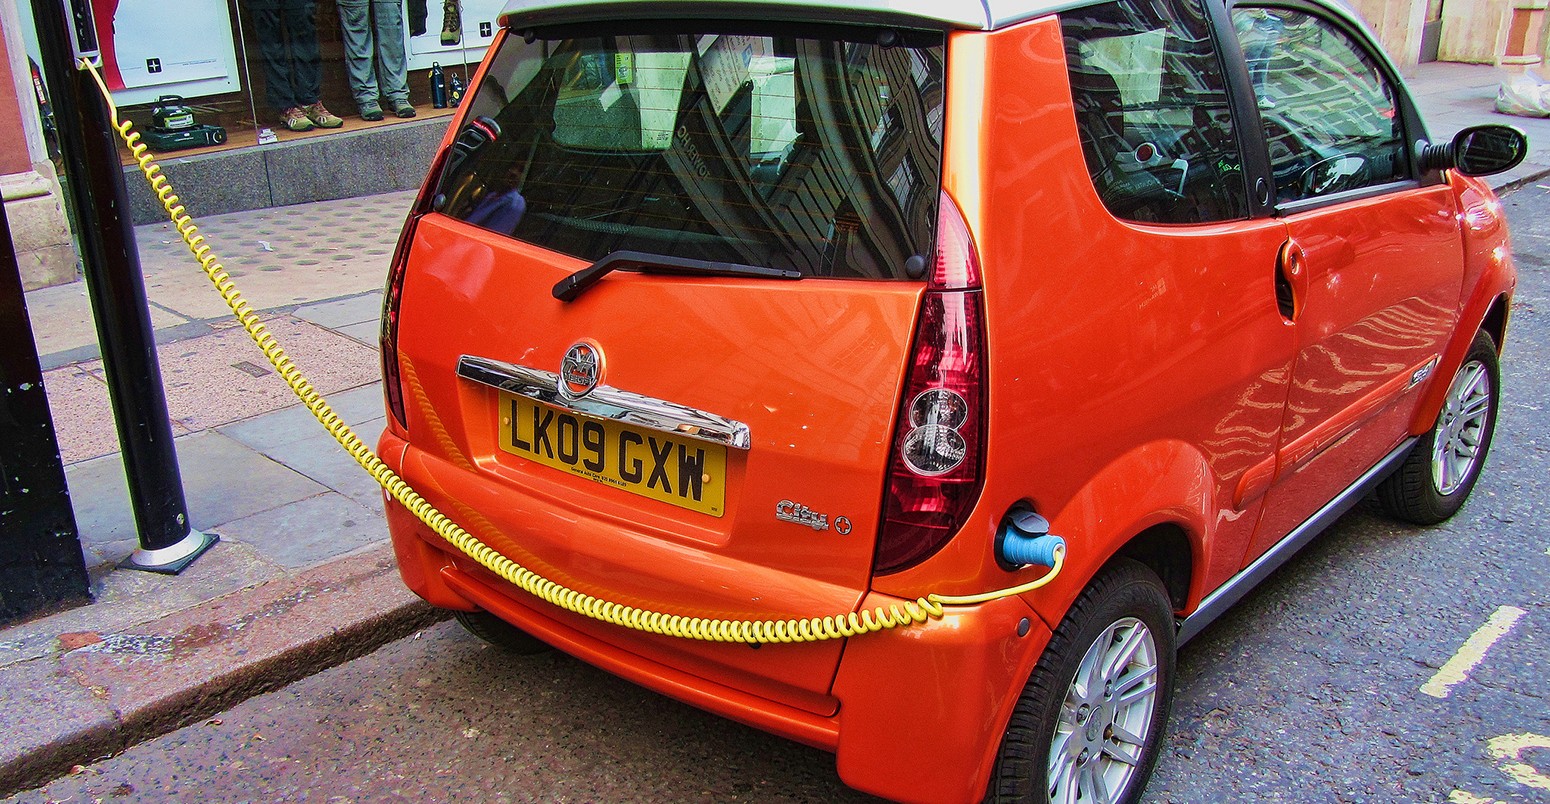 Orange electric car on charge, London, England, UK